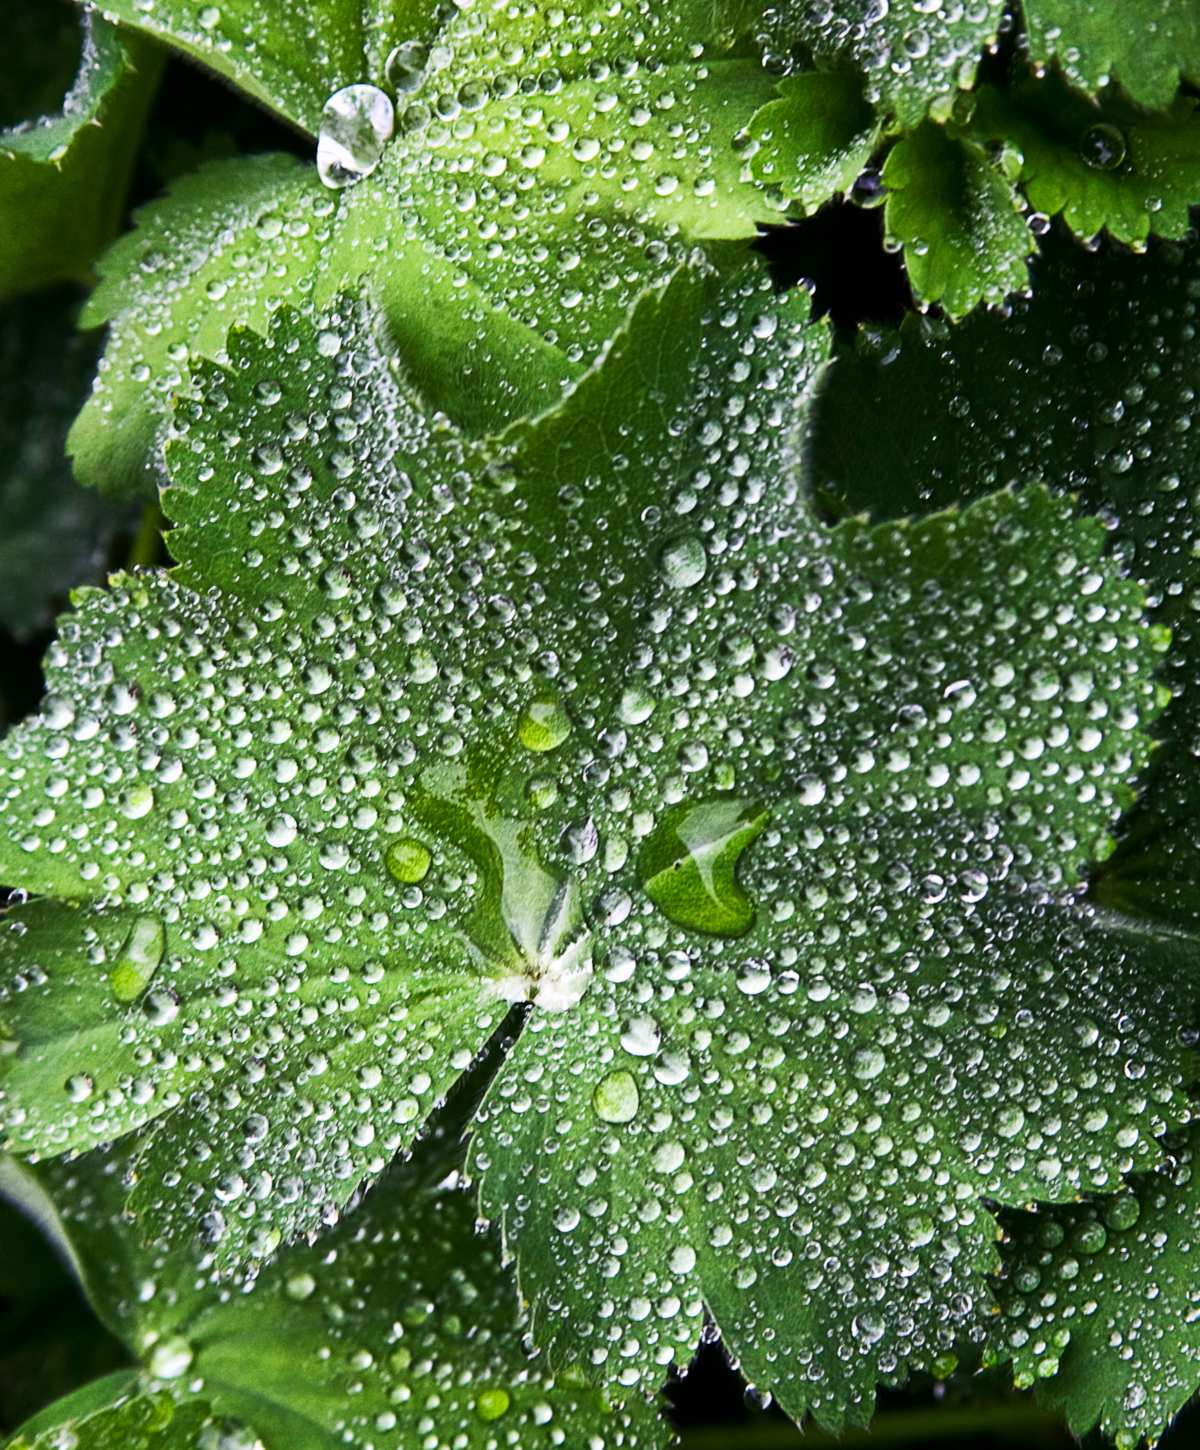 Leaf covered in rain